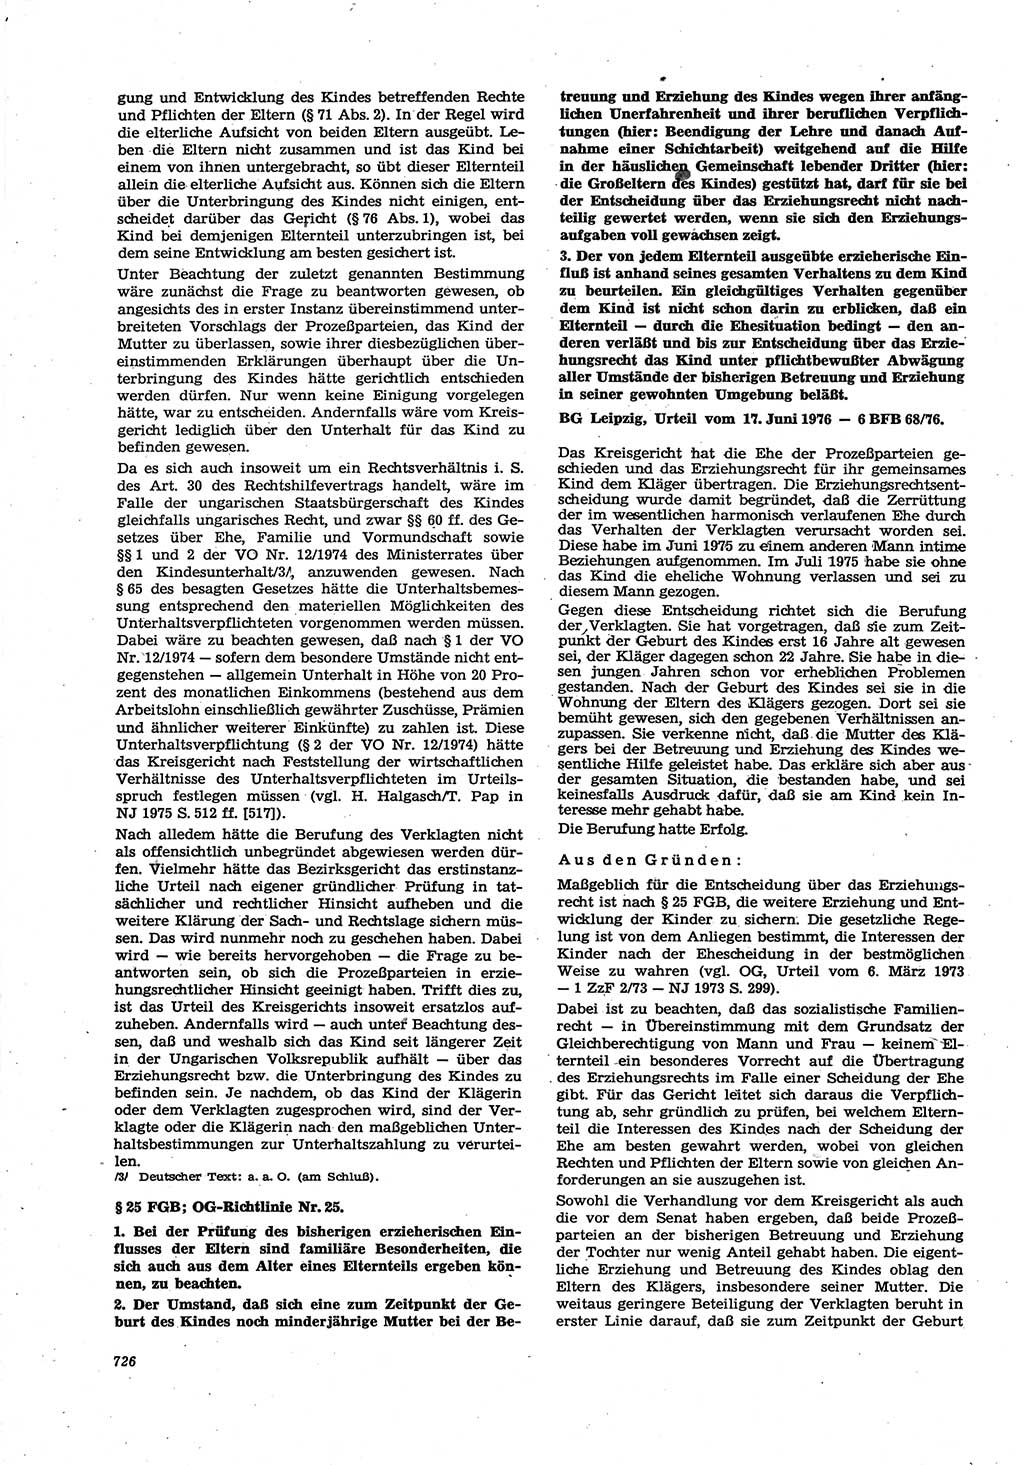 Neue Justiz (NJ), Zeitschrift für Recht und Rechtswissenschaft [Deutsche Demokratische Republik (DDR)], 30. Jahrgang 1976, Seite 726 (NJ DDR 1976, S. 726)